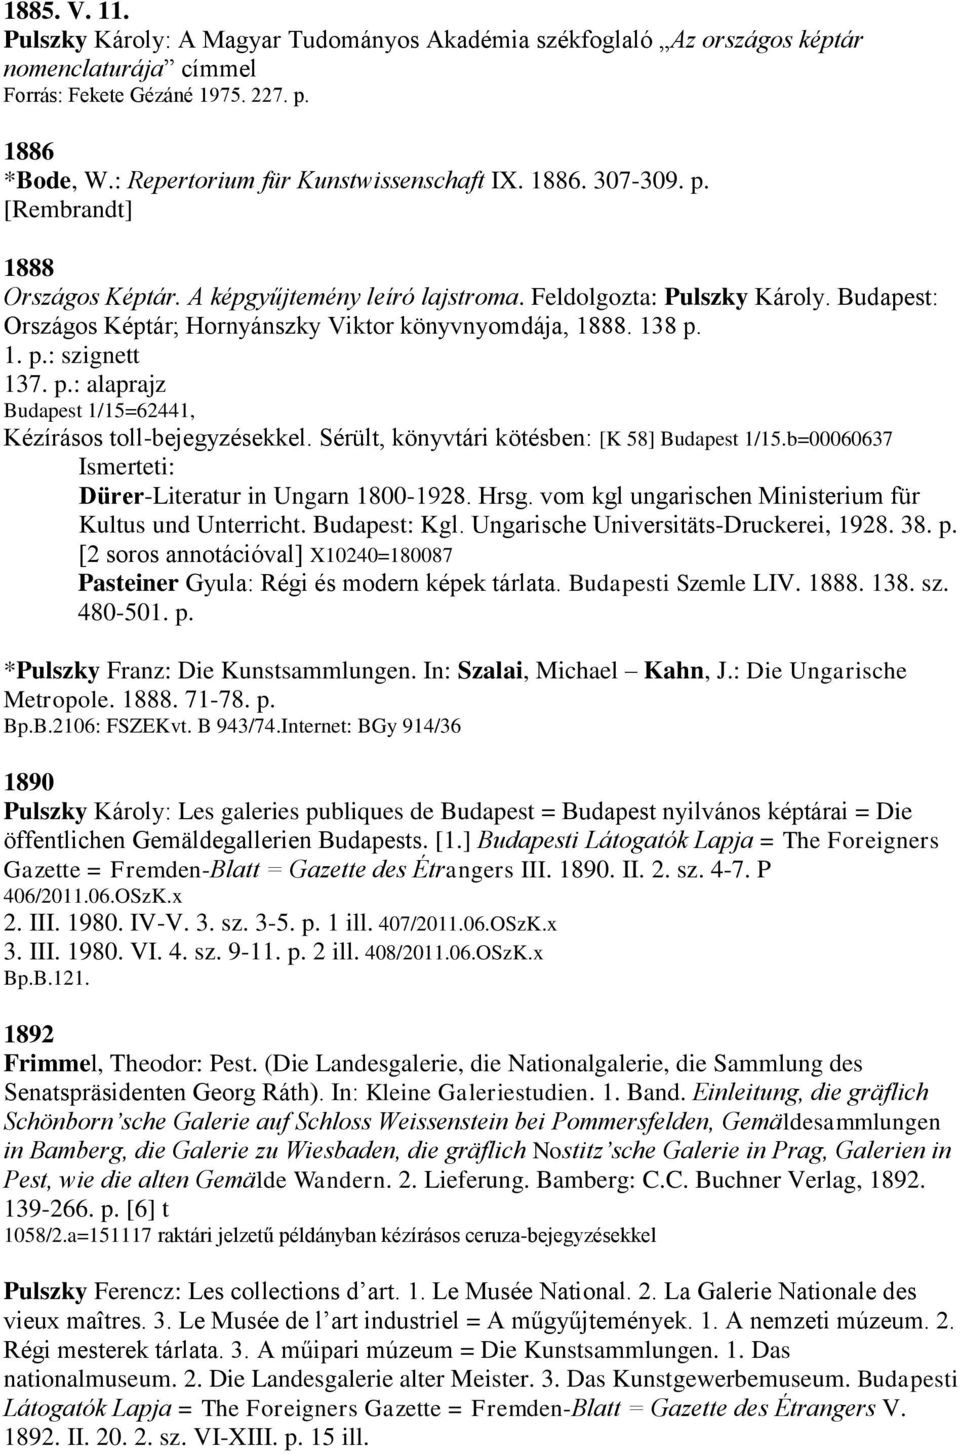 p.: alaprajz Budapest 1/15=62441, Kézírásos toll-bejegyzésekkel. Sérült, könyvtári kötésben: [K 58] Budapest 1/15.b=00060637 Dürer-Literatur in Ungarn 1800-1928. Hrsg.